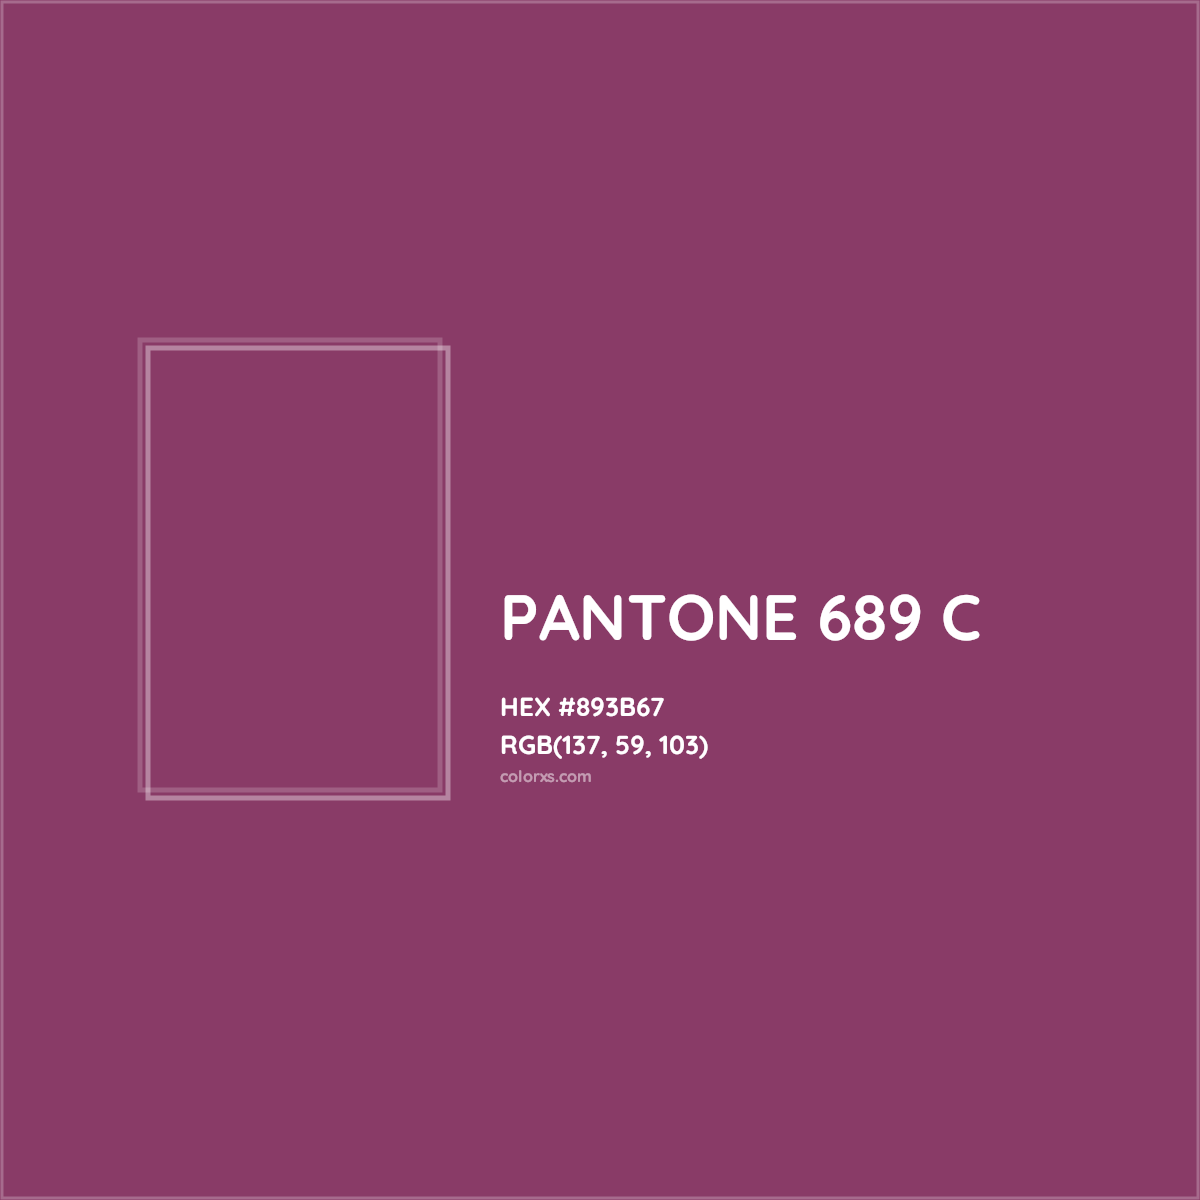 HEX #893B67 PANTONE 689 C CMS Pantone PMS - Color Code